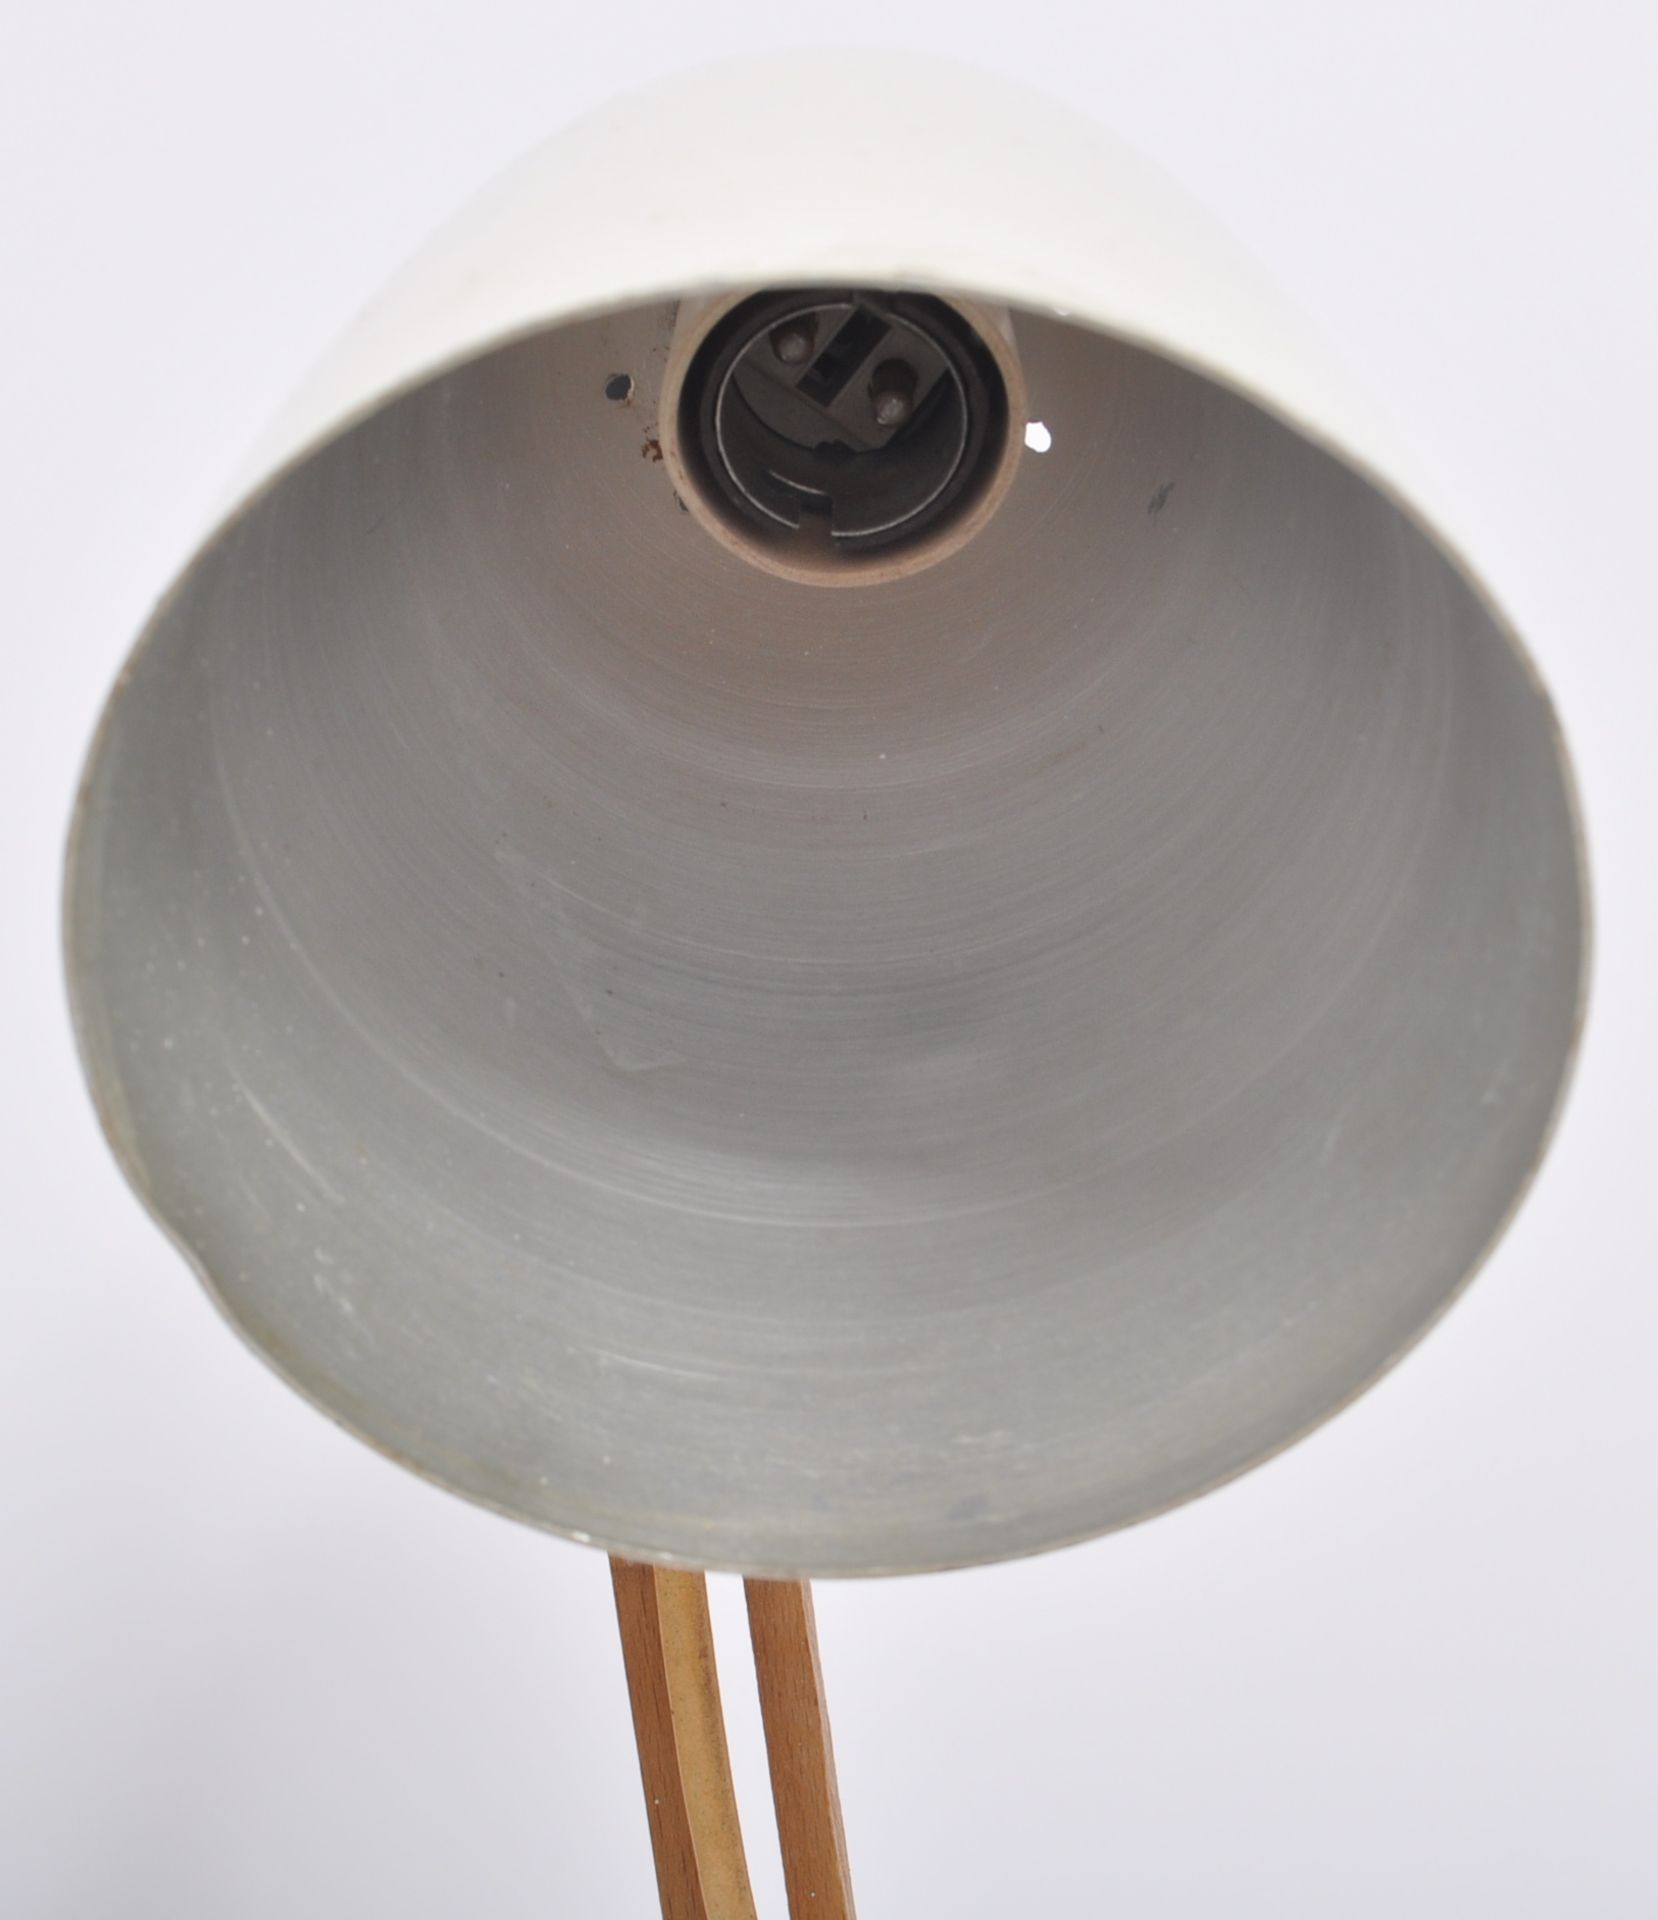 TERENCE CONRAN - HABITAT - MACLAMP - 1960s DESK LAMP - Image 2 of 7